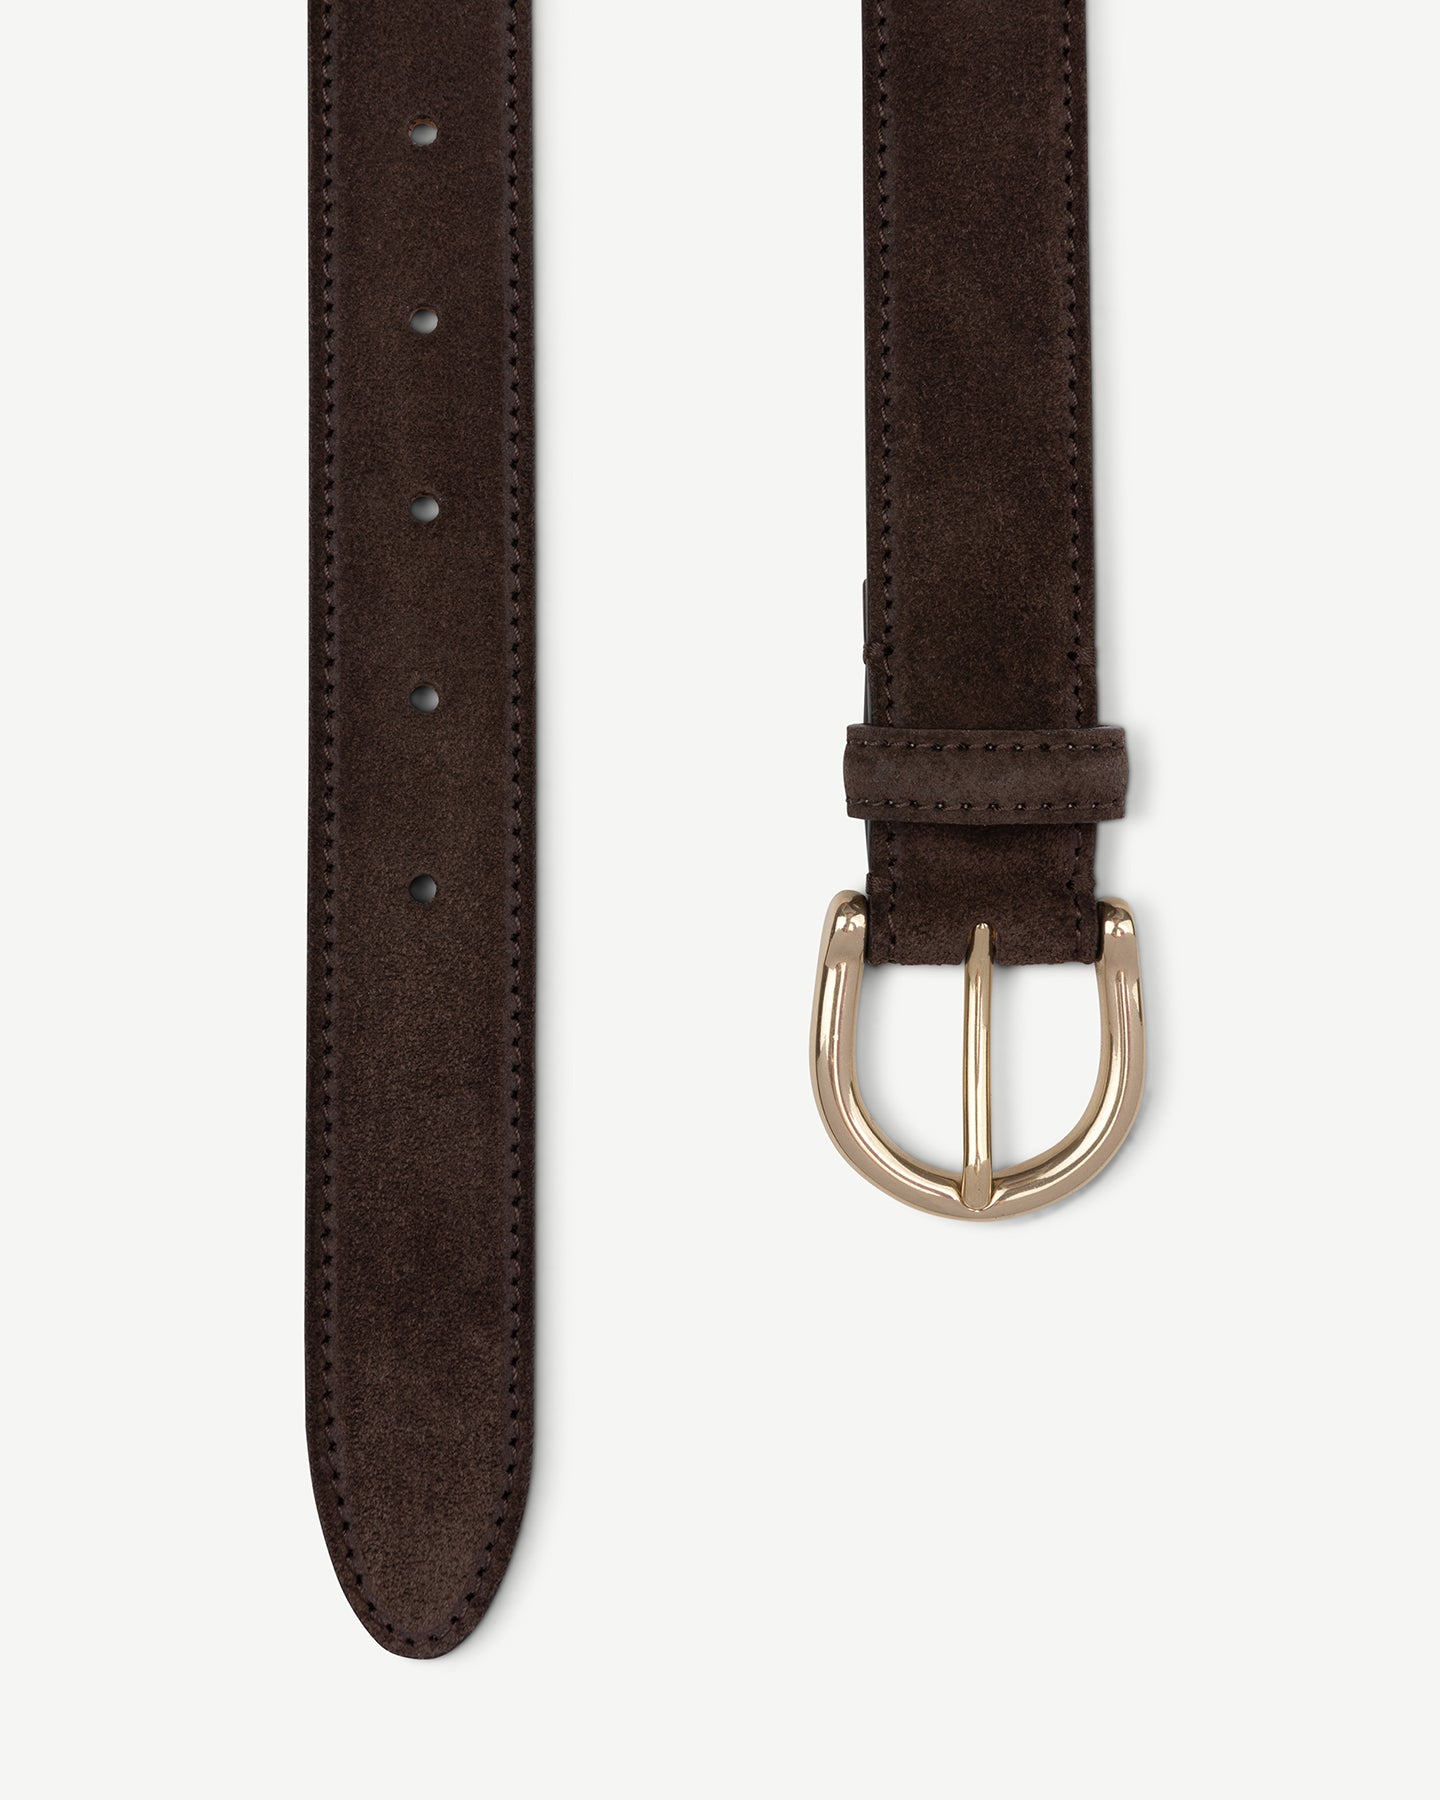 Dark brown suede dress belt with solid brass buckle